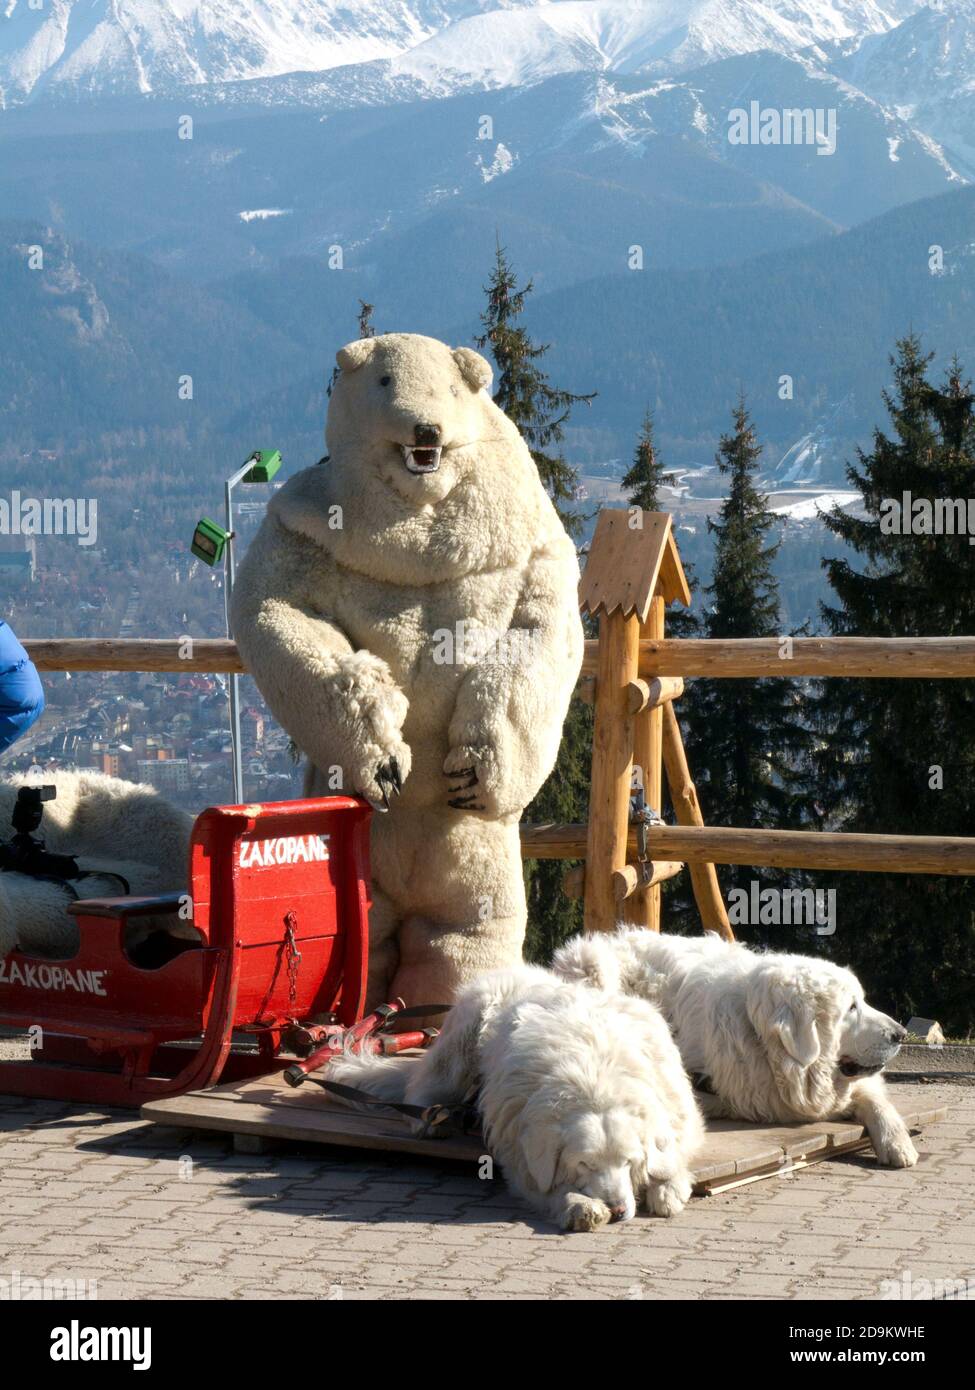 mountain dogs and statue of white bear, Tatra Mountains, Zakopane, Poland Stock Photo